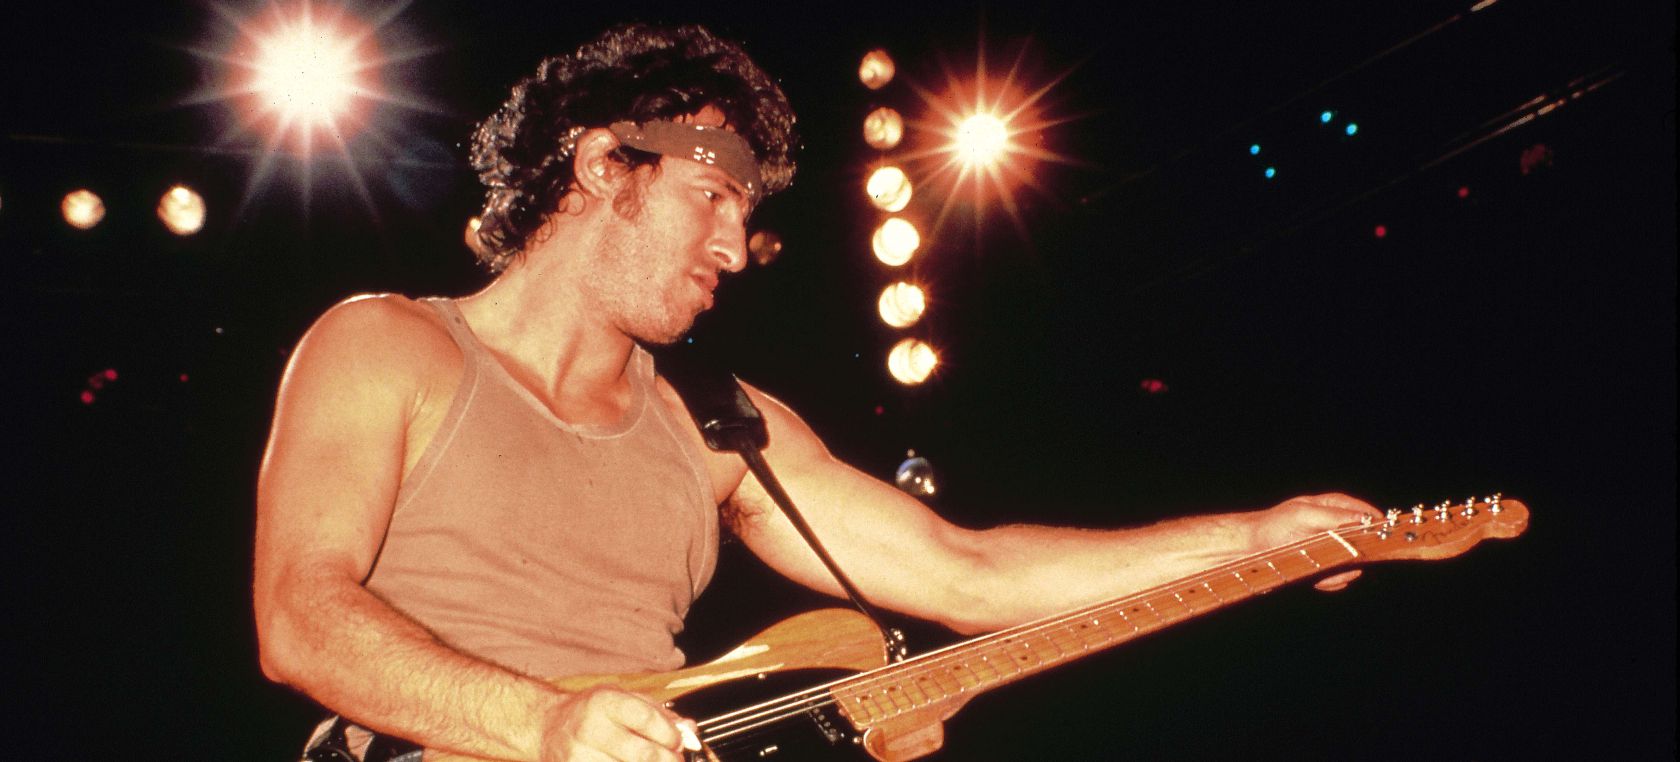 ‘Born to Run’, el disco de Bruce Springsteen que lo convirtió en una estrella, cumple 47 años